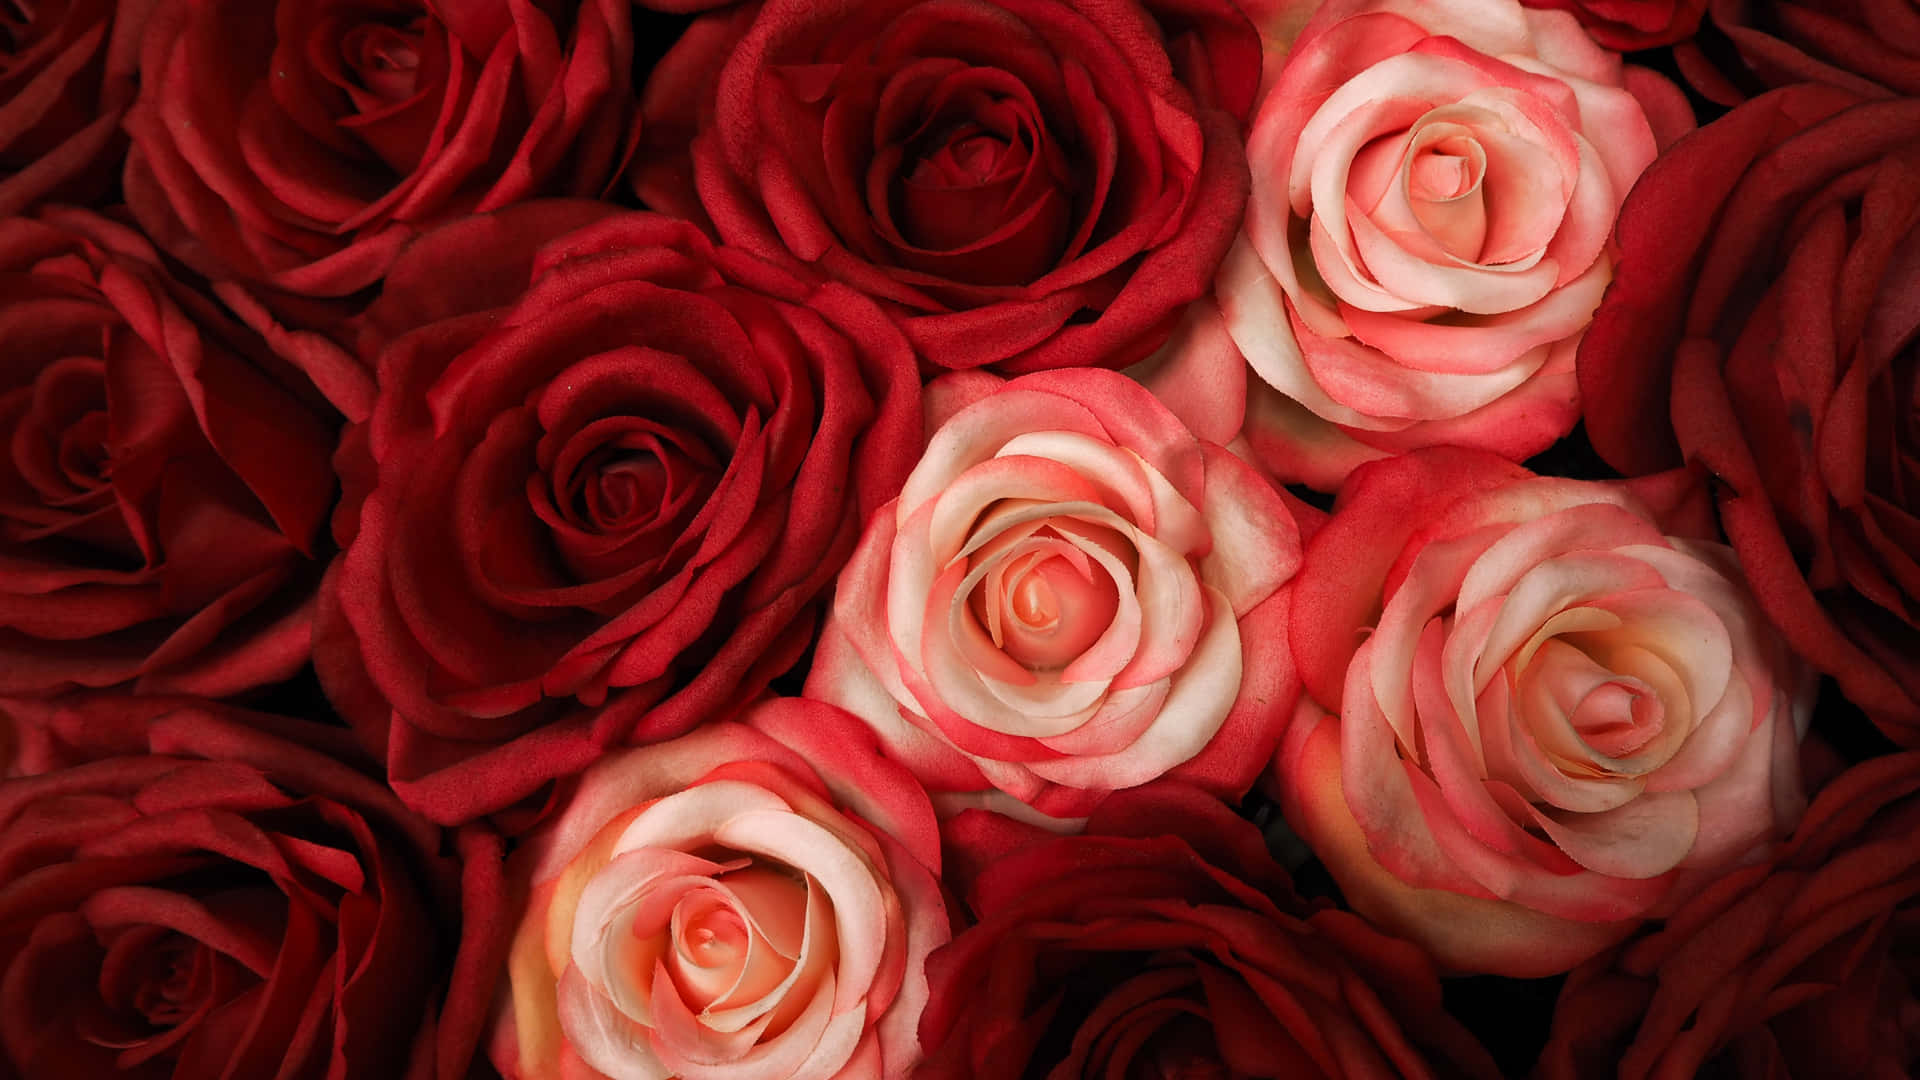 Røde og hvide roser - et klassisk symbol på udødelig kærlighed. Wallpaper